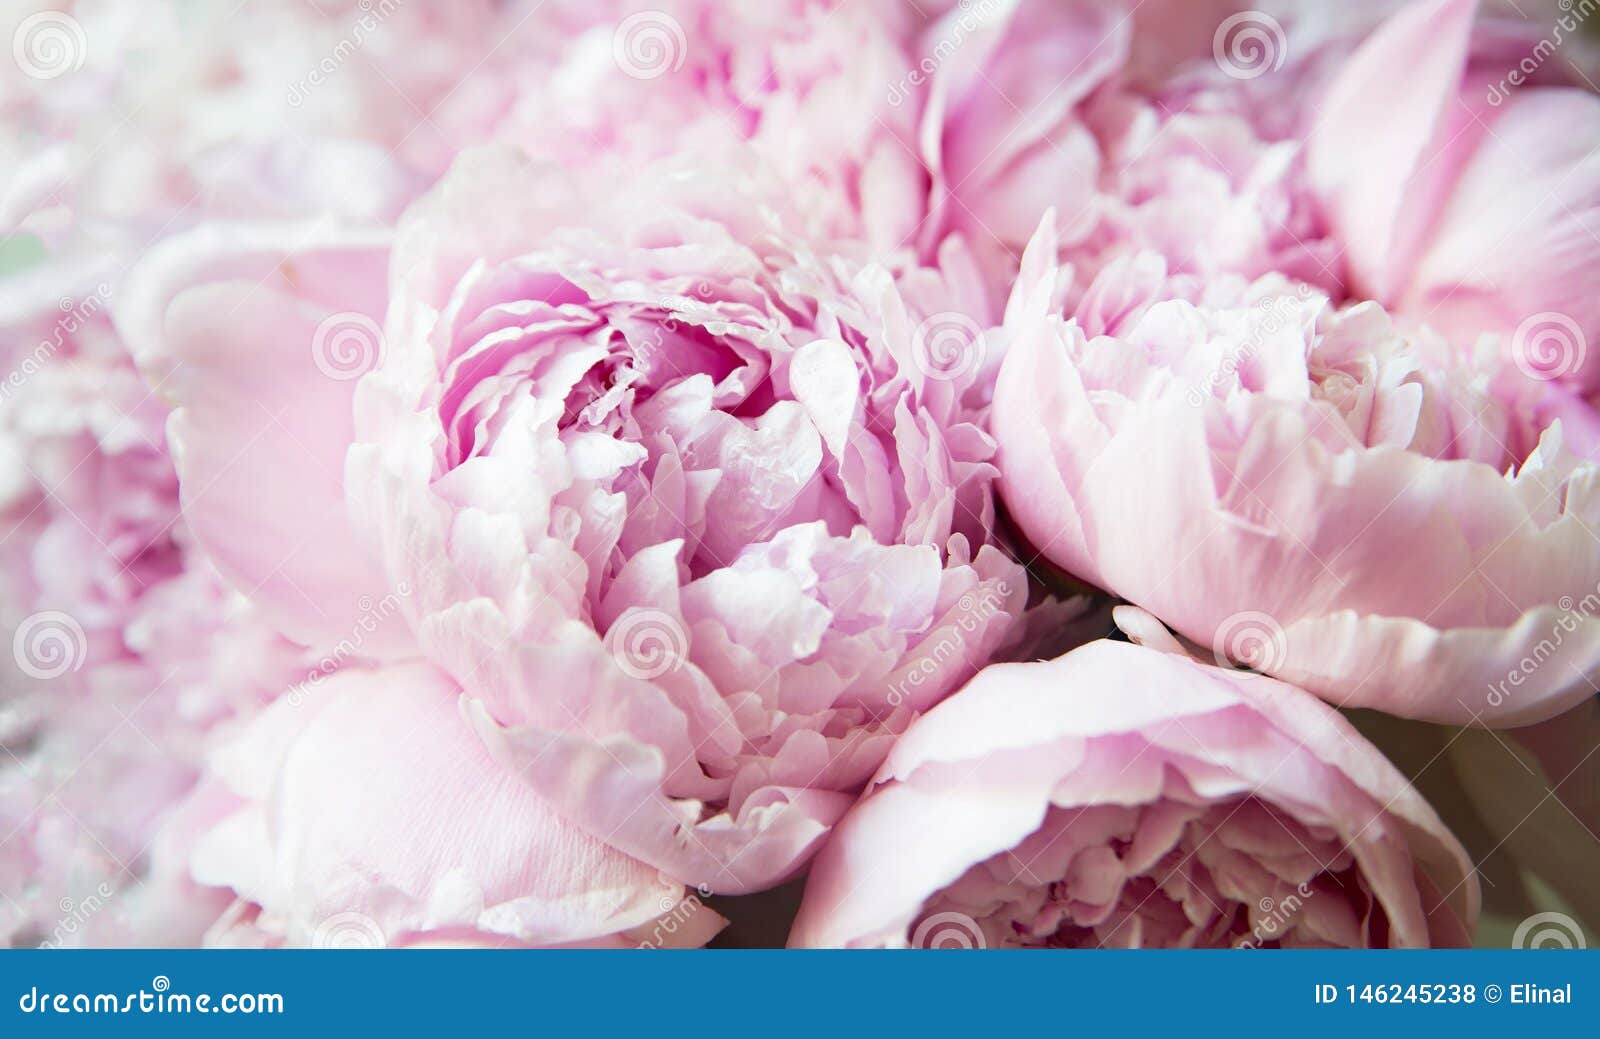 Pivoines Blanches Et Roses Papier Peint De Fleur De Fond Photo stock -  Image du nature, été: 146245238